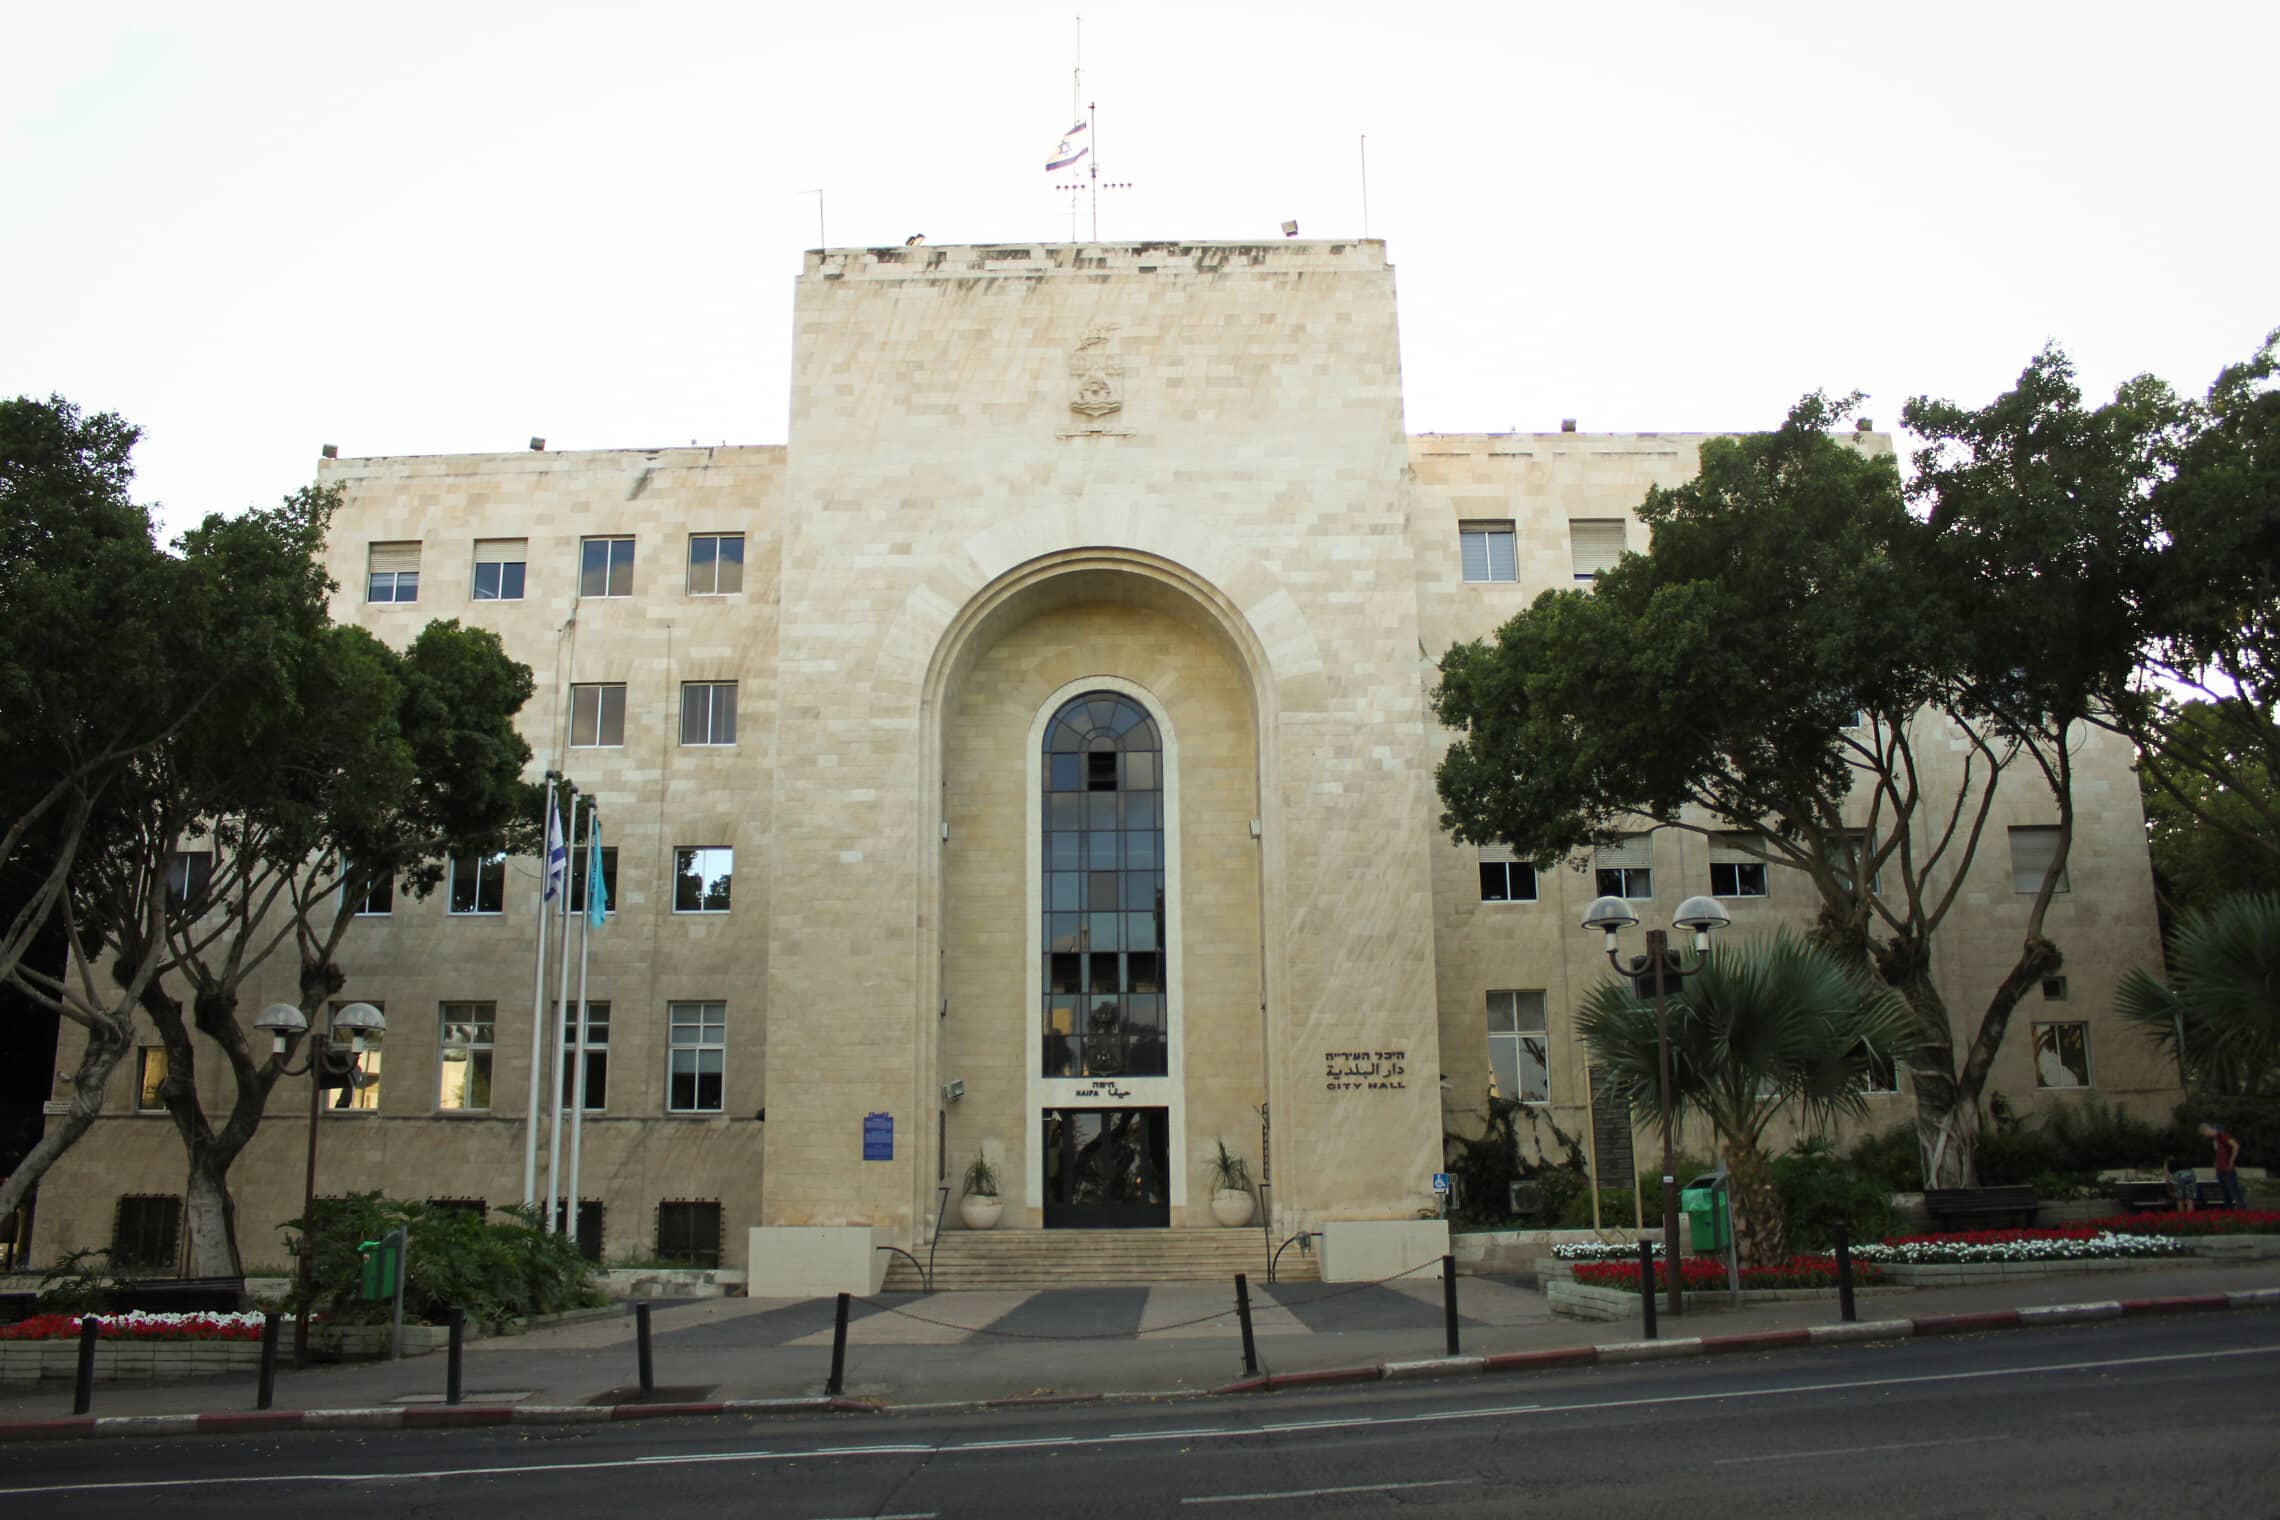  בניין עיריית חיפה ב-2012 (צילום: Yakovleva, ויקיפדיה)